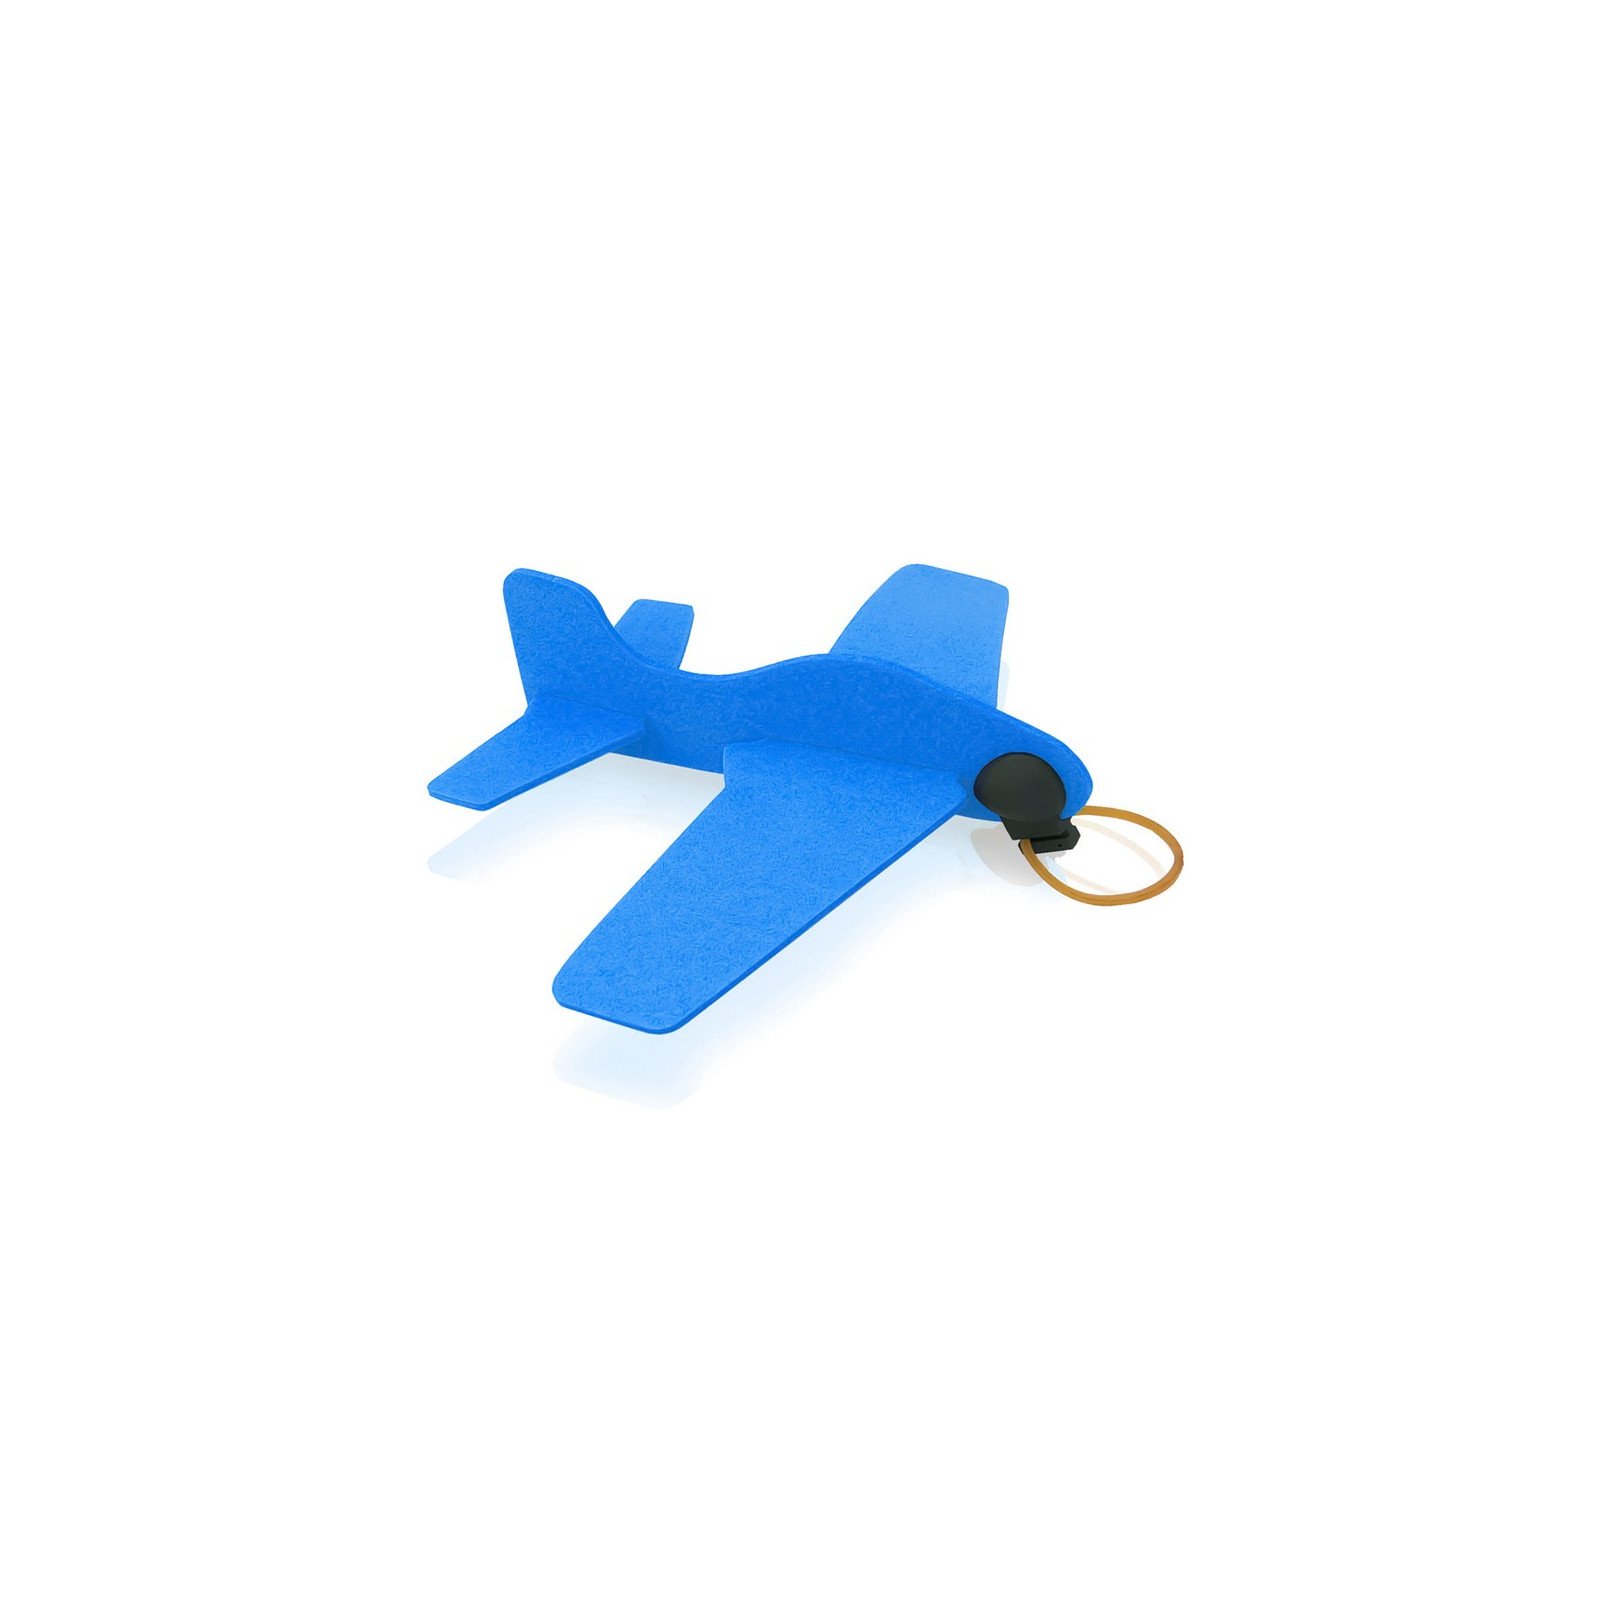 Baron aircraft blue color